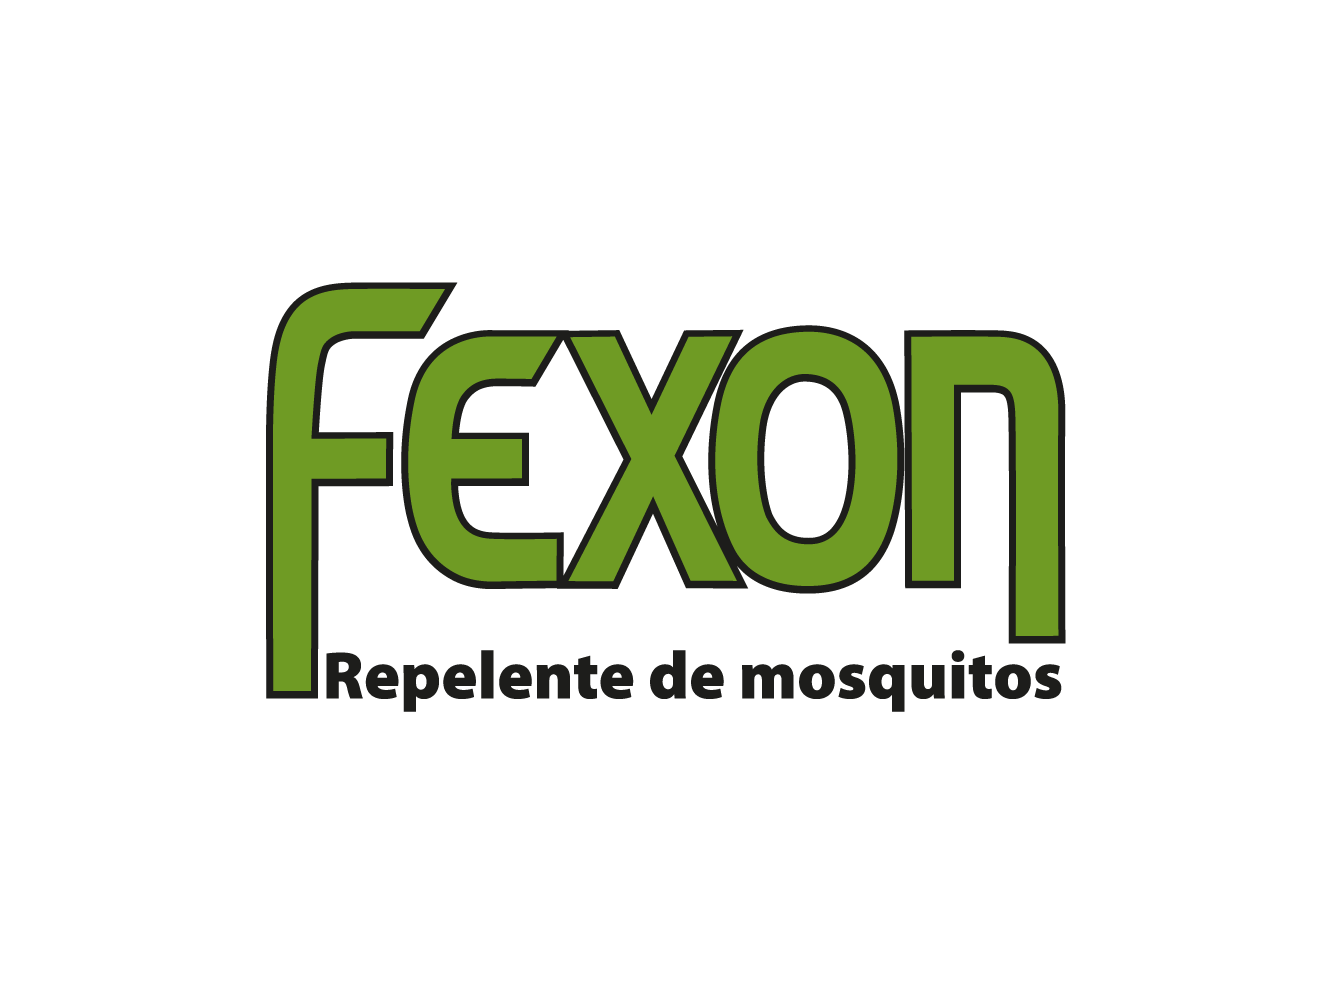 Fexon